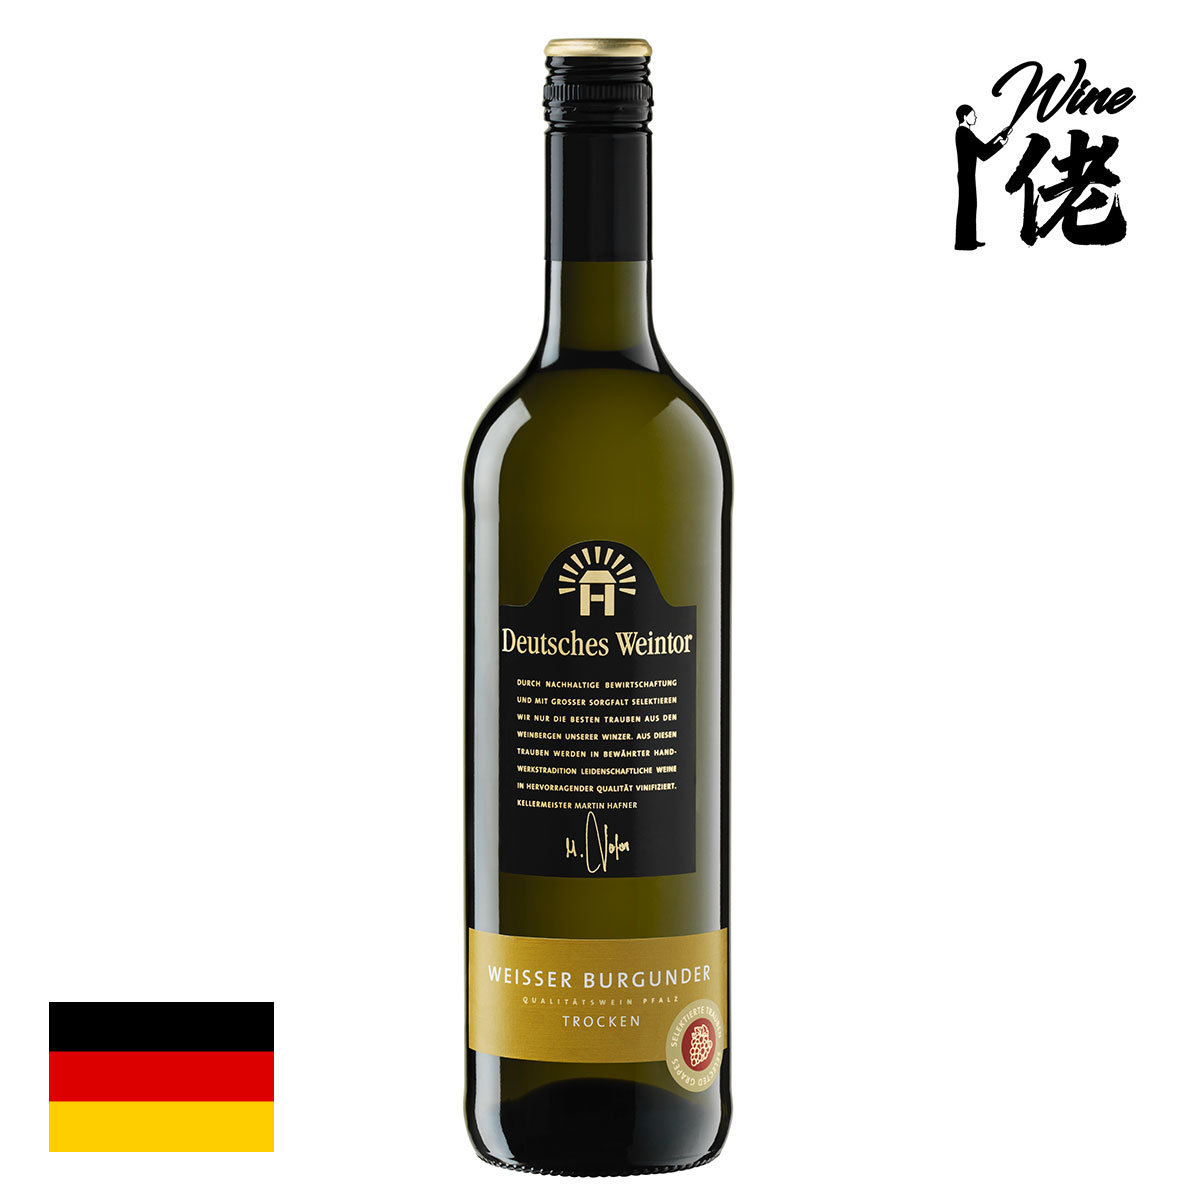 Deutsches Weintor, Weisser Burgunder (Pinot Blanc), Pfalz Trocken, 2018/2019, Germany